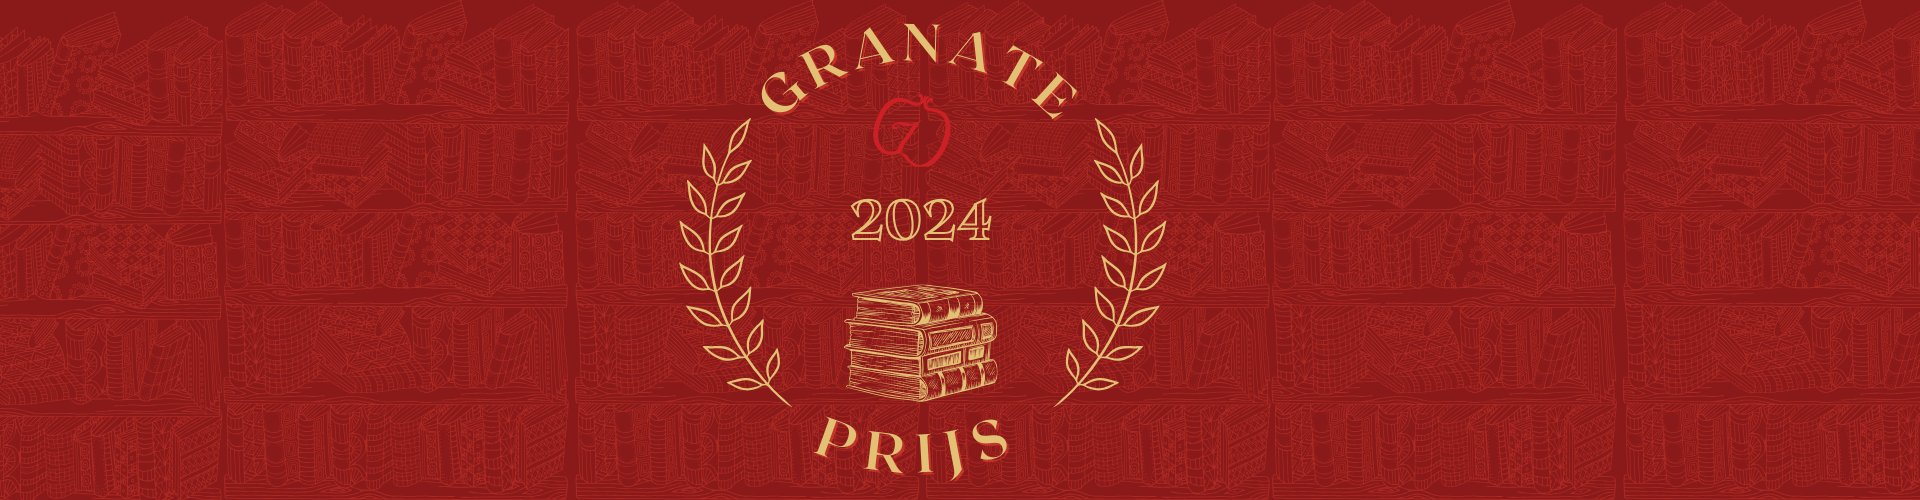 Granate Prijs 2024